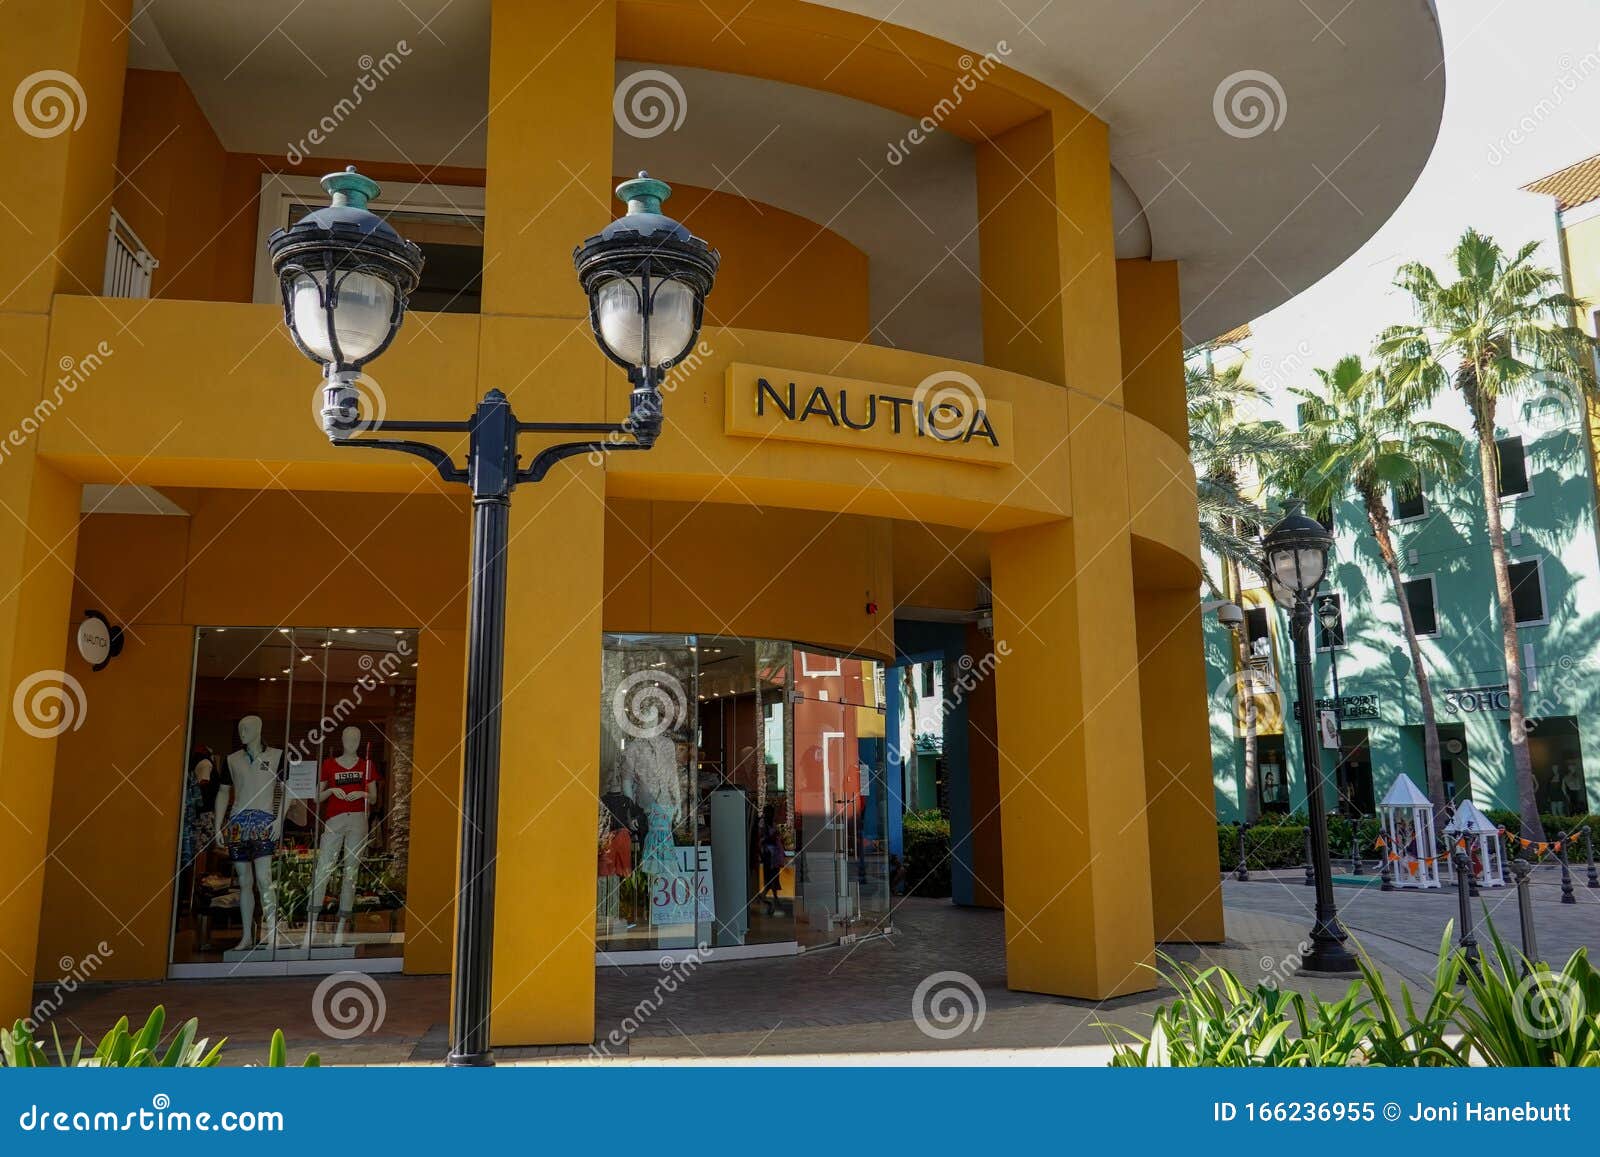 Loja De Roupas Da Nautica No Distrito De Compras Em Curacao Imagem  Editorial - Imagem de tipos, produtos: 166236955